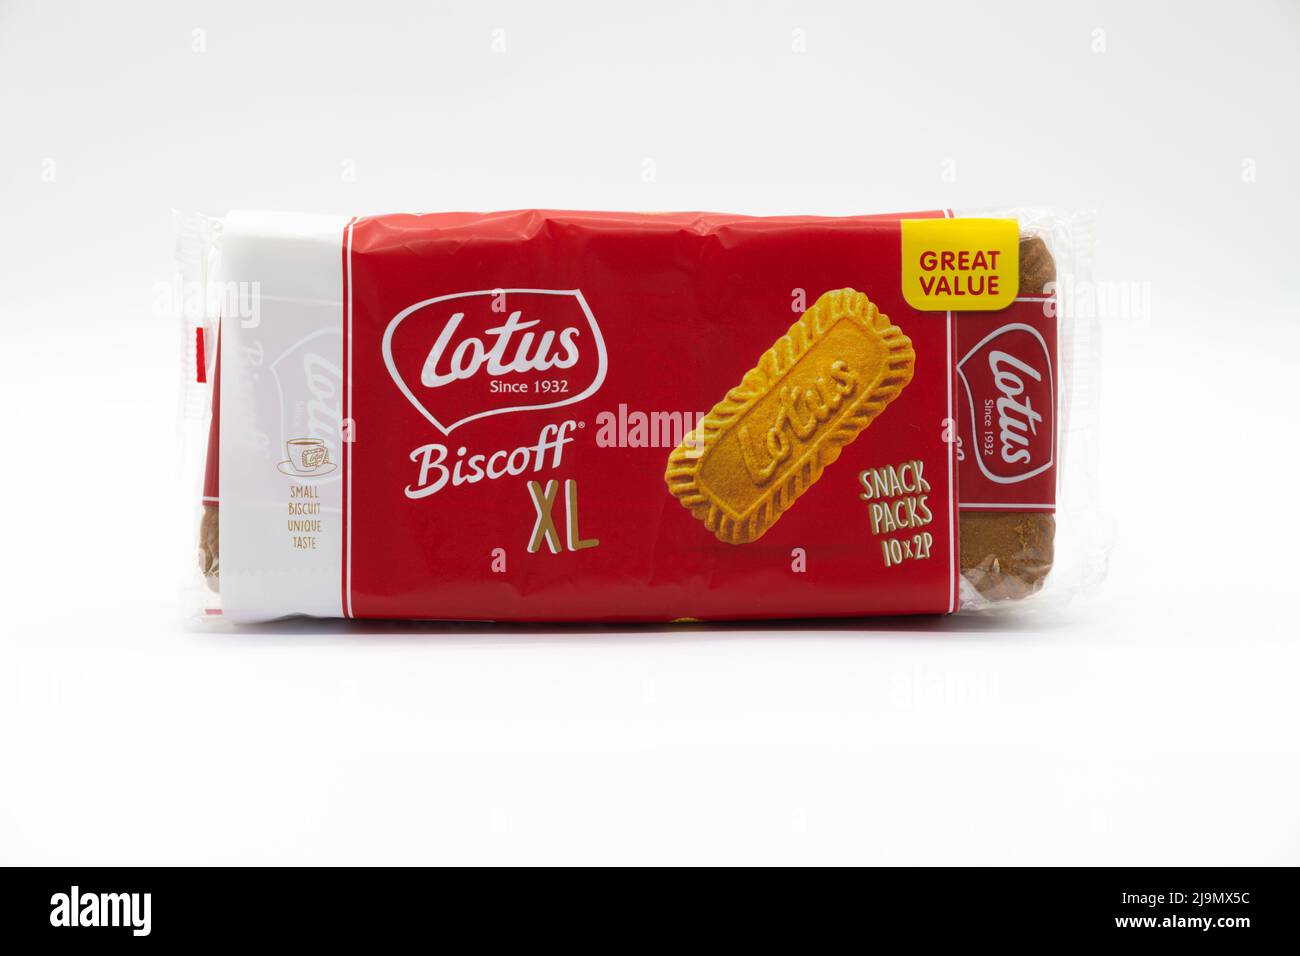 Irvine, Scotland, UK - 18 maggio 2022: Biscotti Biscoff XL a marchio Lotus contenuti in un involucro di plastica che al momento non è riciclabile. Foto Stock